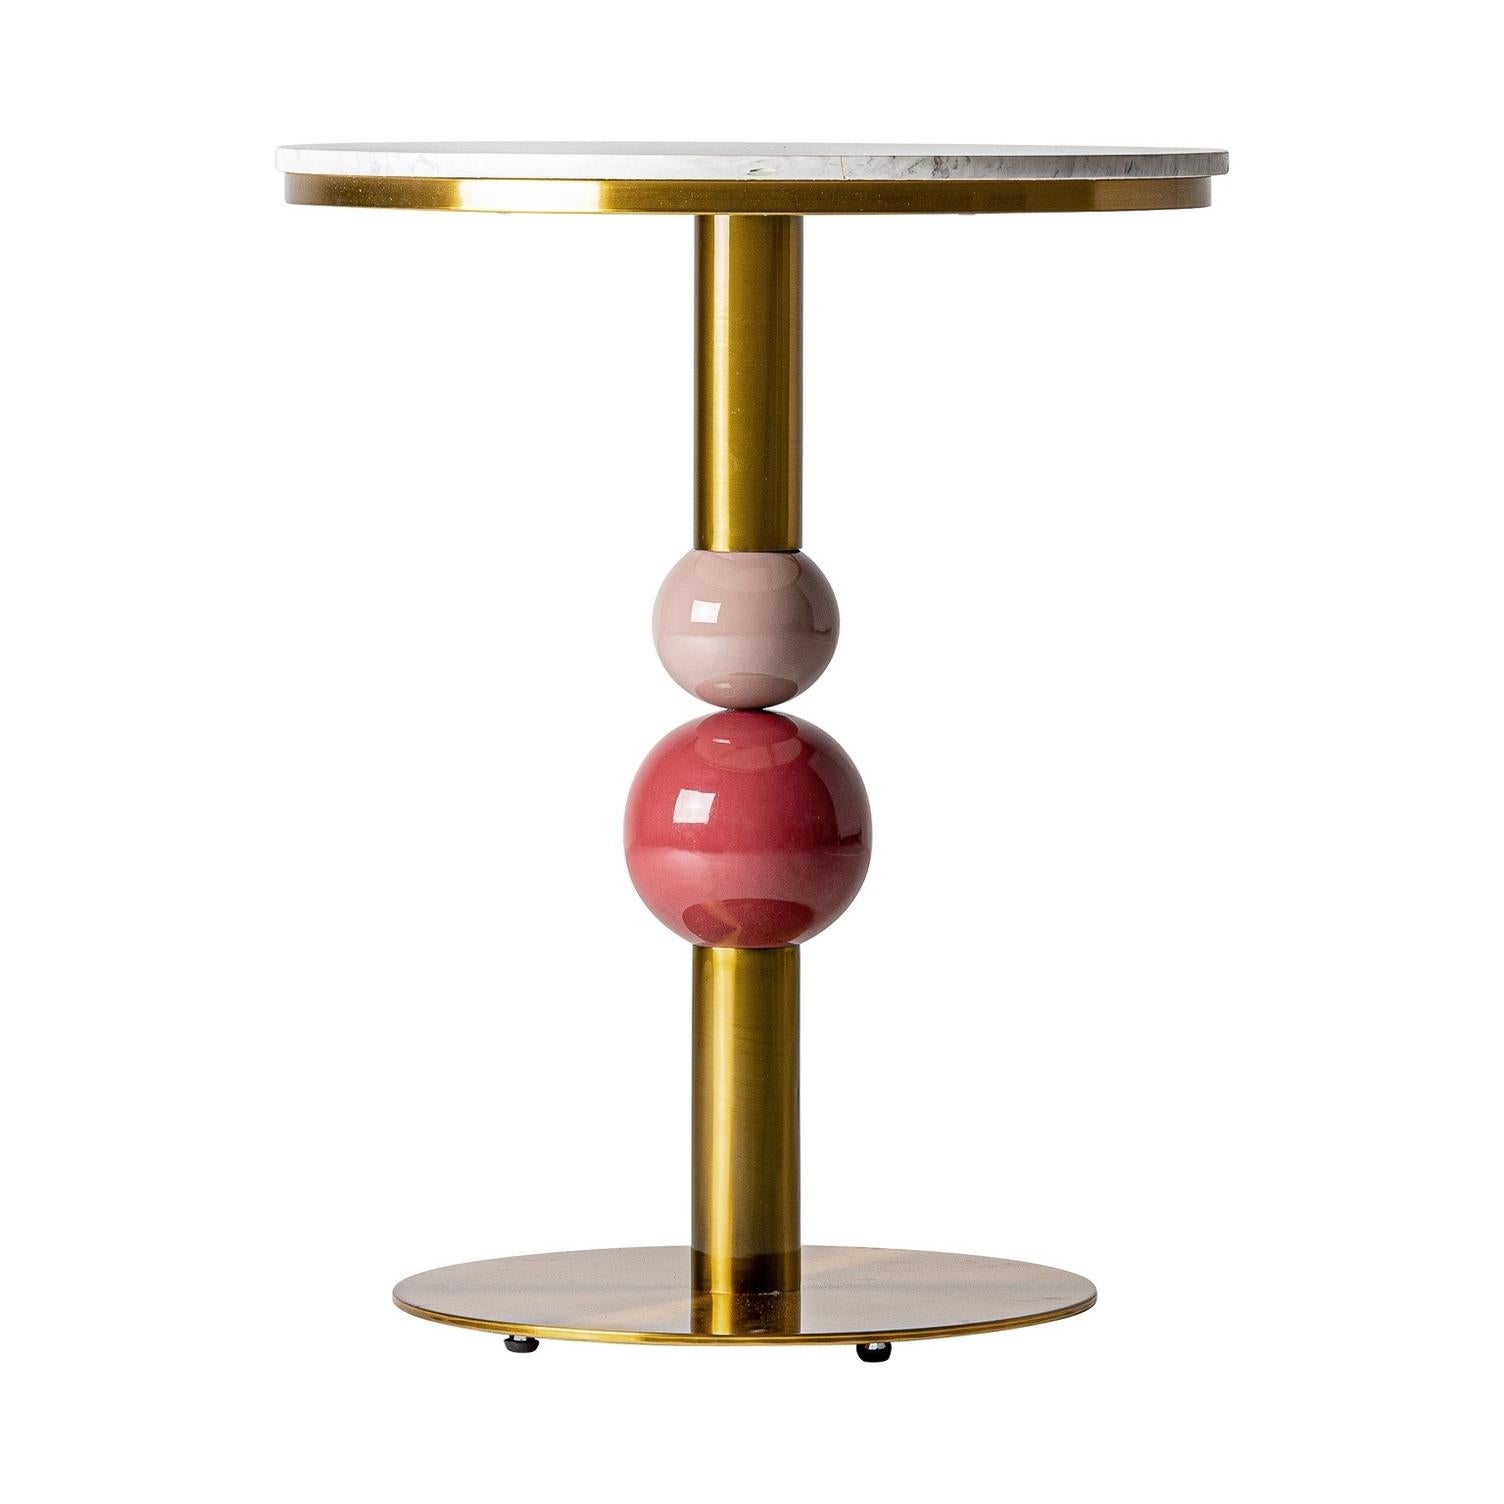 Runder Sockeltisch im italienischen Design, bestehend aus einem grafischen Fuß aus vergoldetem Metall und einem runden Tablett aus weißem Marmor mit pudrigem rosa Touch!